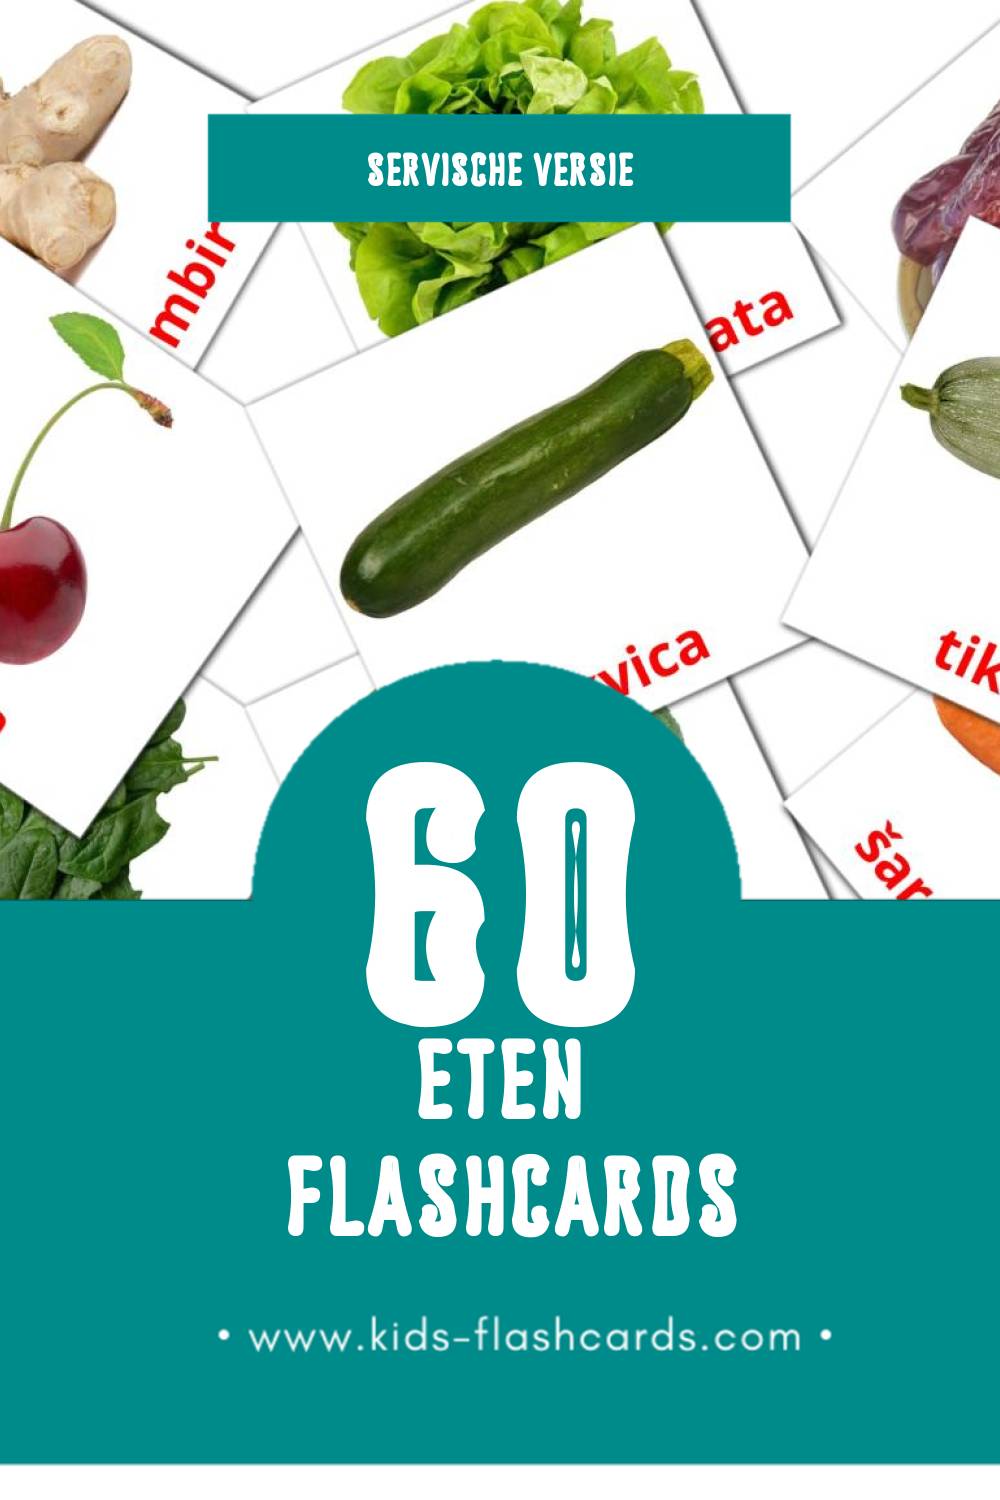 Visuele Hrana Flashcards voor Kleuters (60 kaarten in het Servisch)